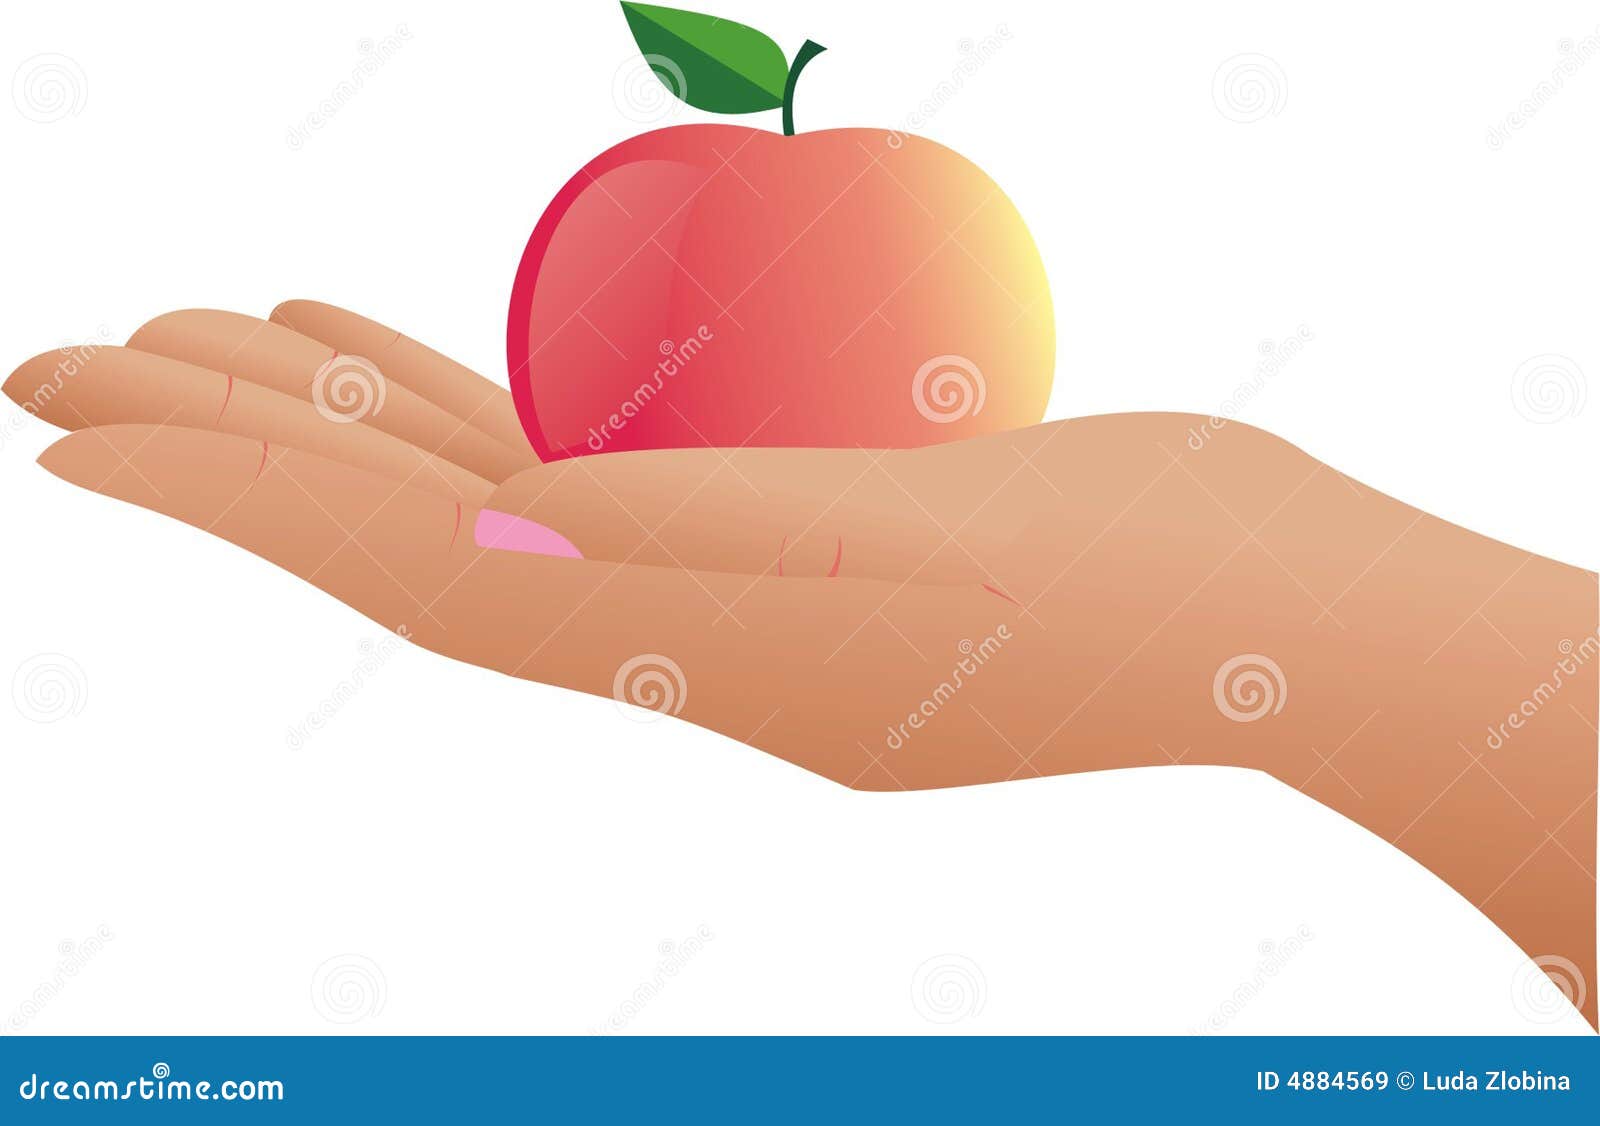 Нарисовать руку с яблоком